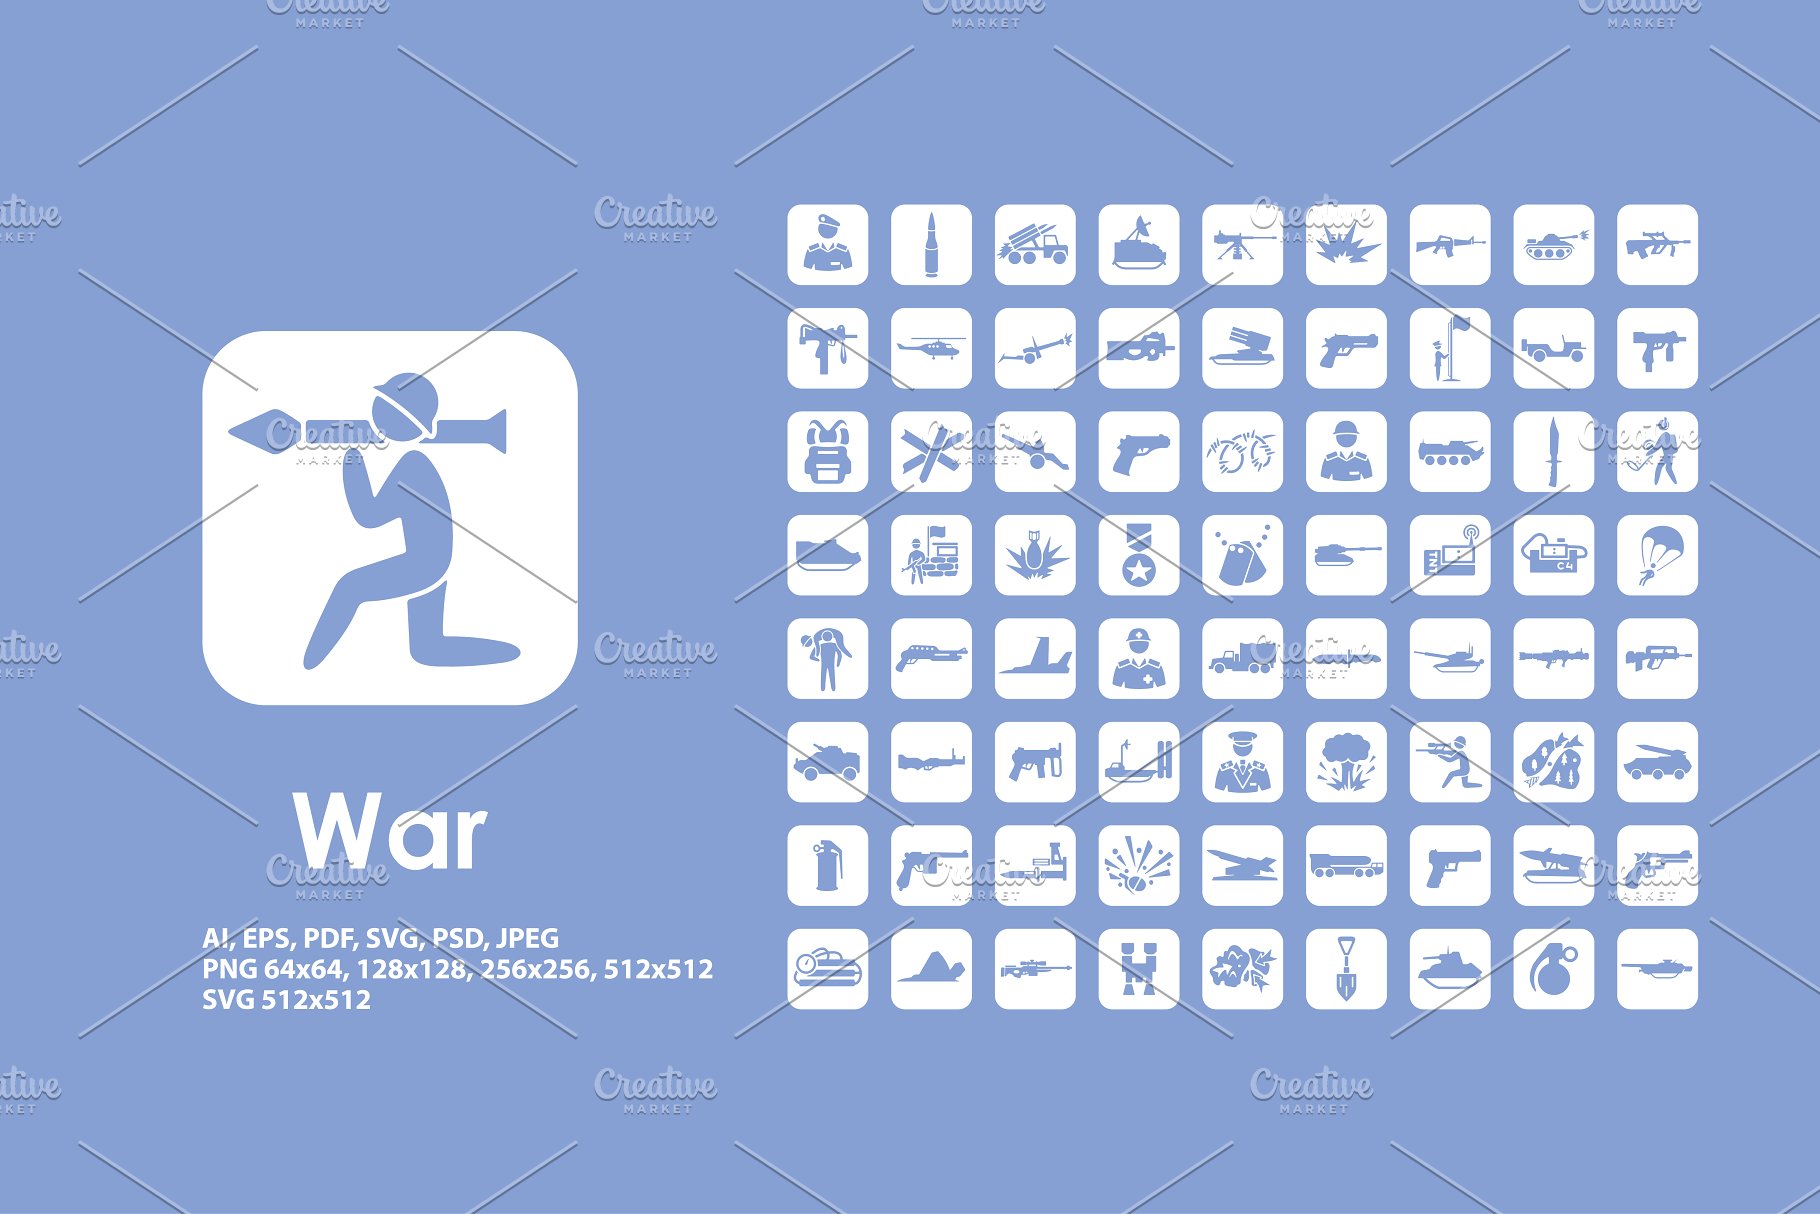 战争主题图标模板 War icons #91197